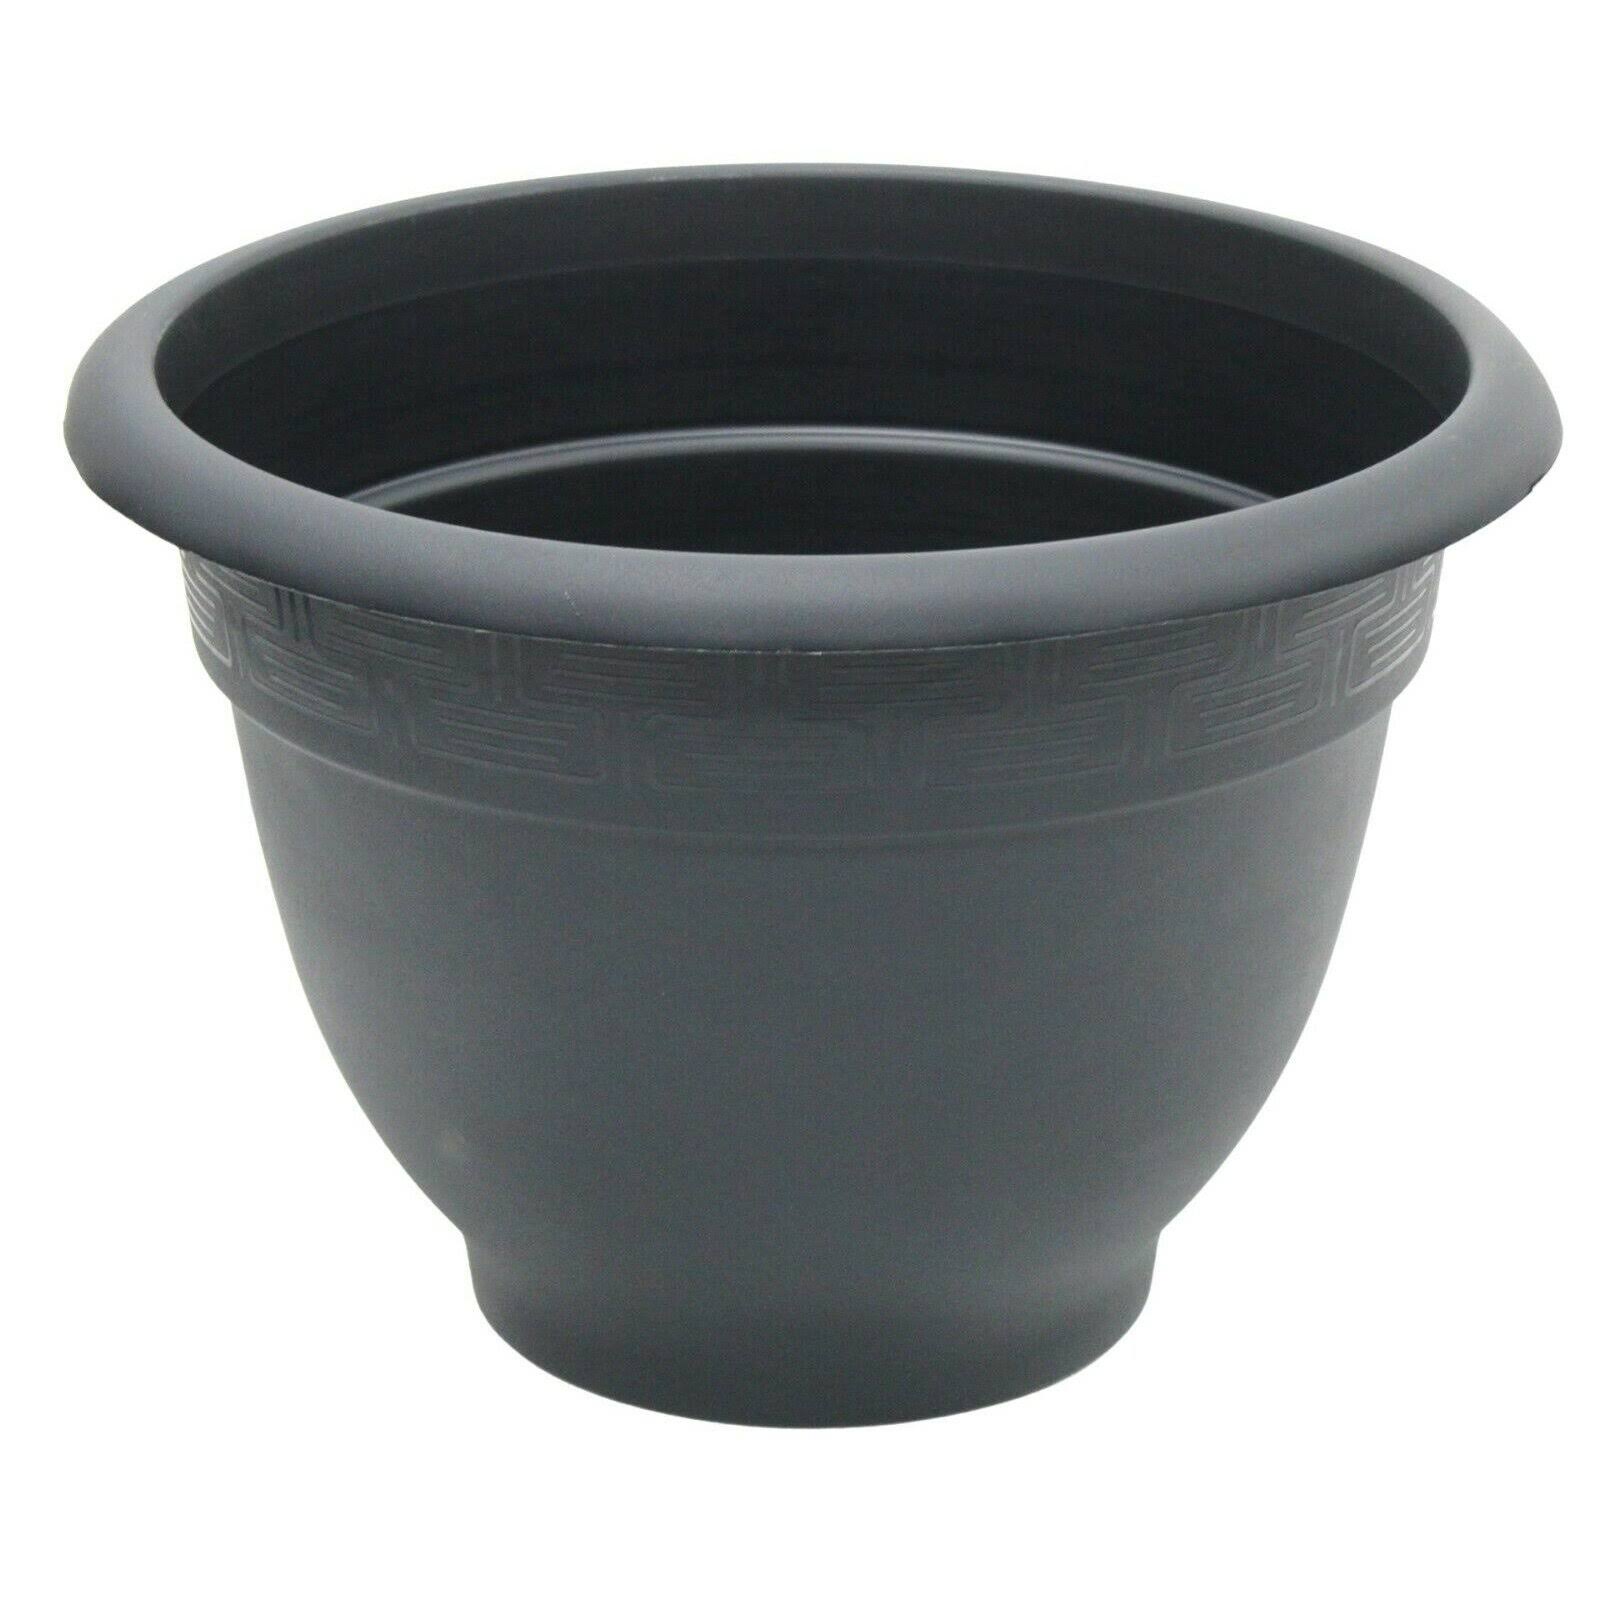 Wham Large 44cm Round Black Barrel Planter Plastic Plant Pot with Design Round Rim